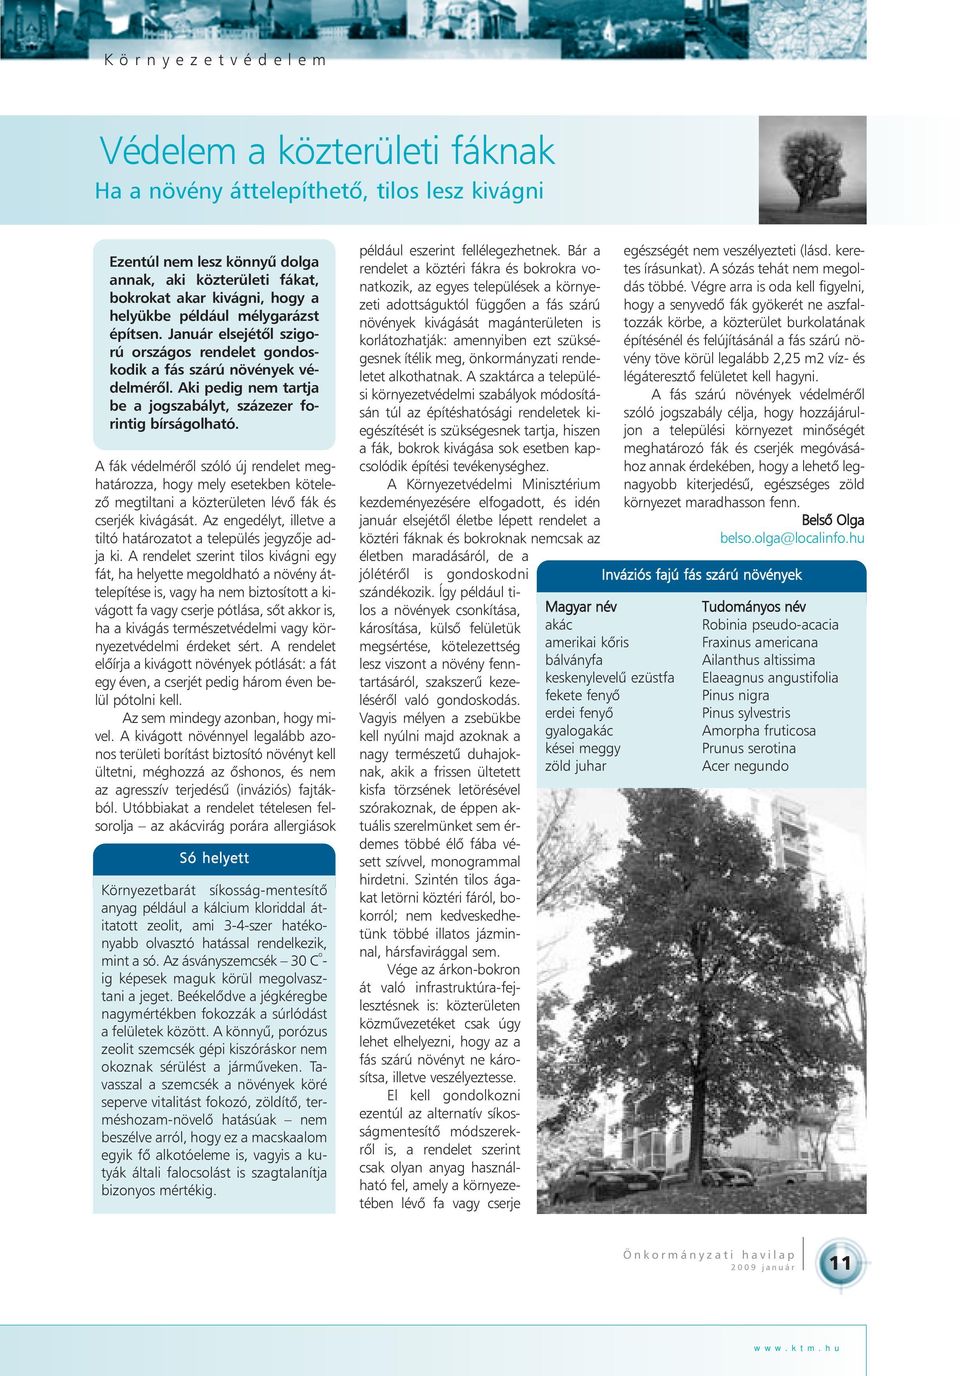 A fák védelmérõl szóló új rendelet meghatározza, hogy mely esetekben kötelezõ megtiltani a közterületen lévõ fák és cserjék kivágását.